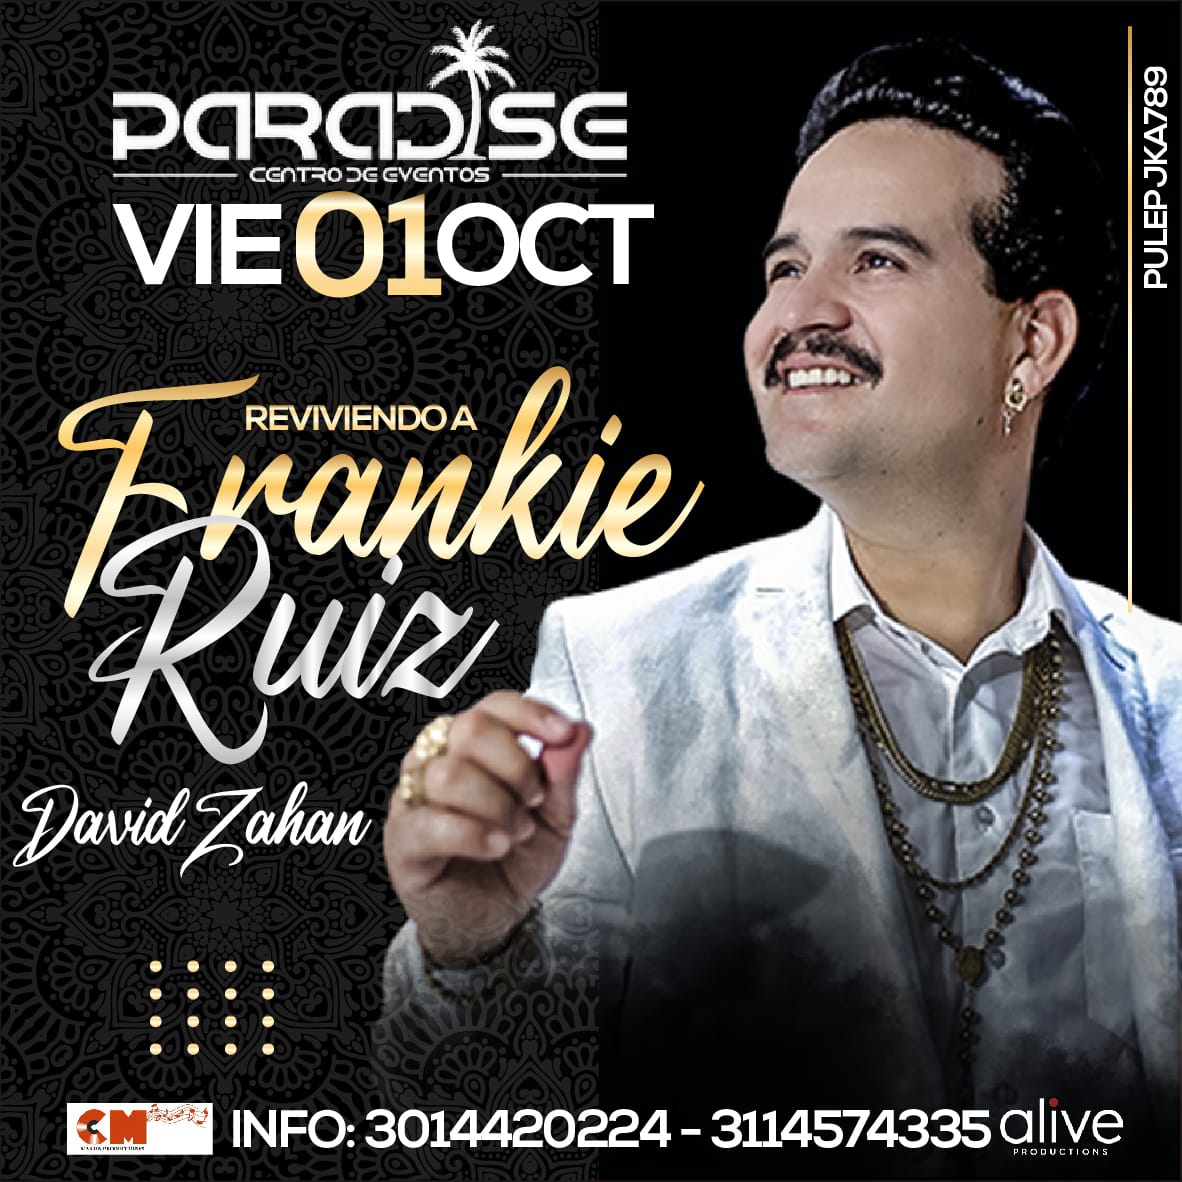 Recordando a Frankie Ruiz con David Zahan en concierto!